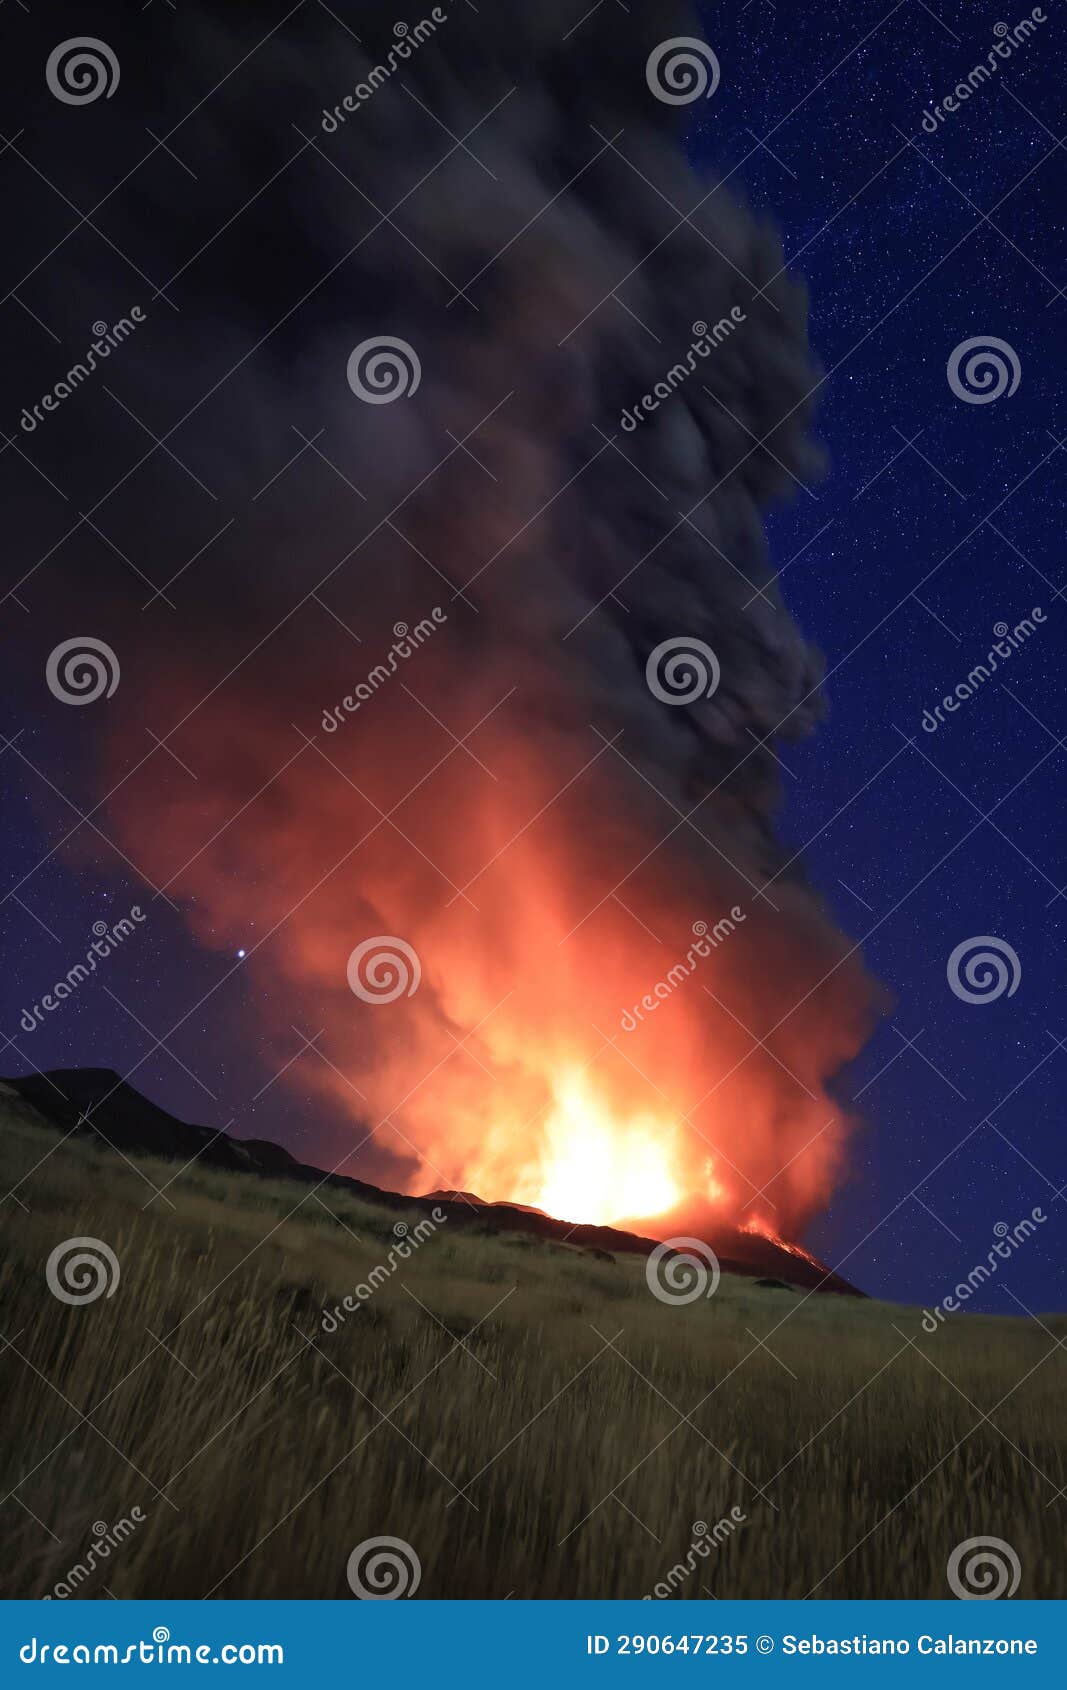 l'etna in sicilia grande eruzione con grandi emissioni di cenere dal cratere del vulcano nel ciel notturno stellato